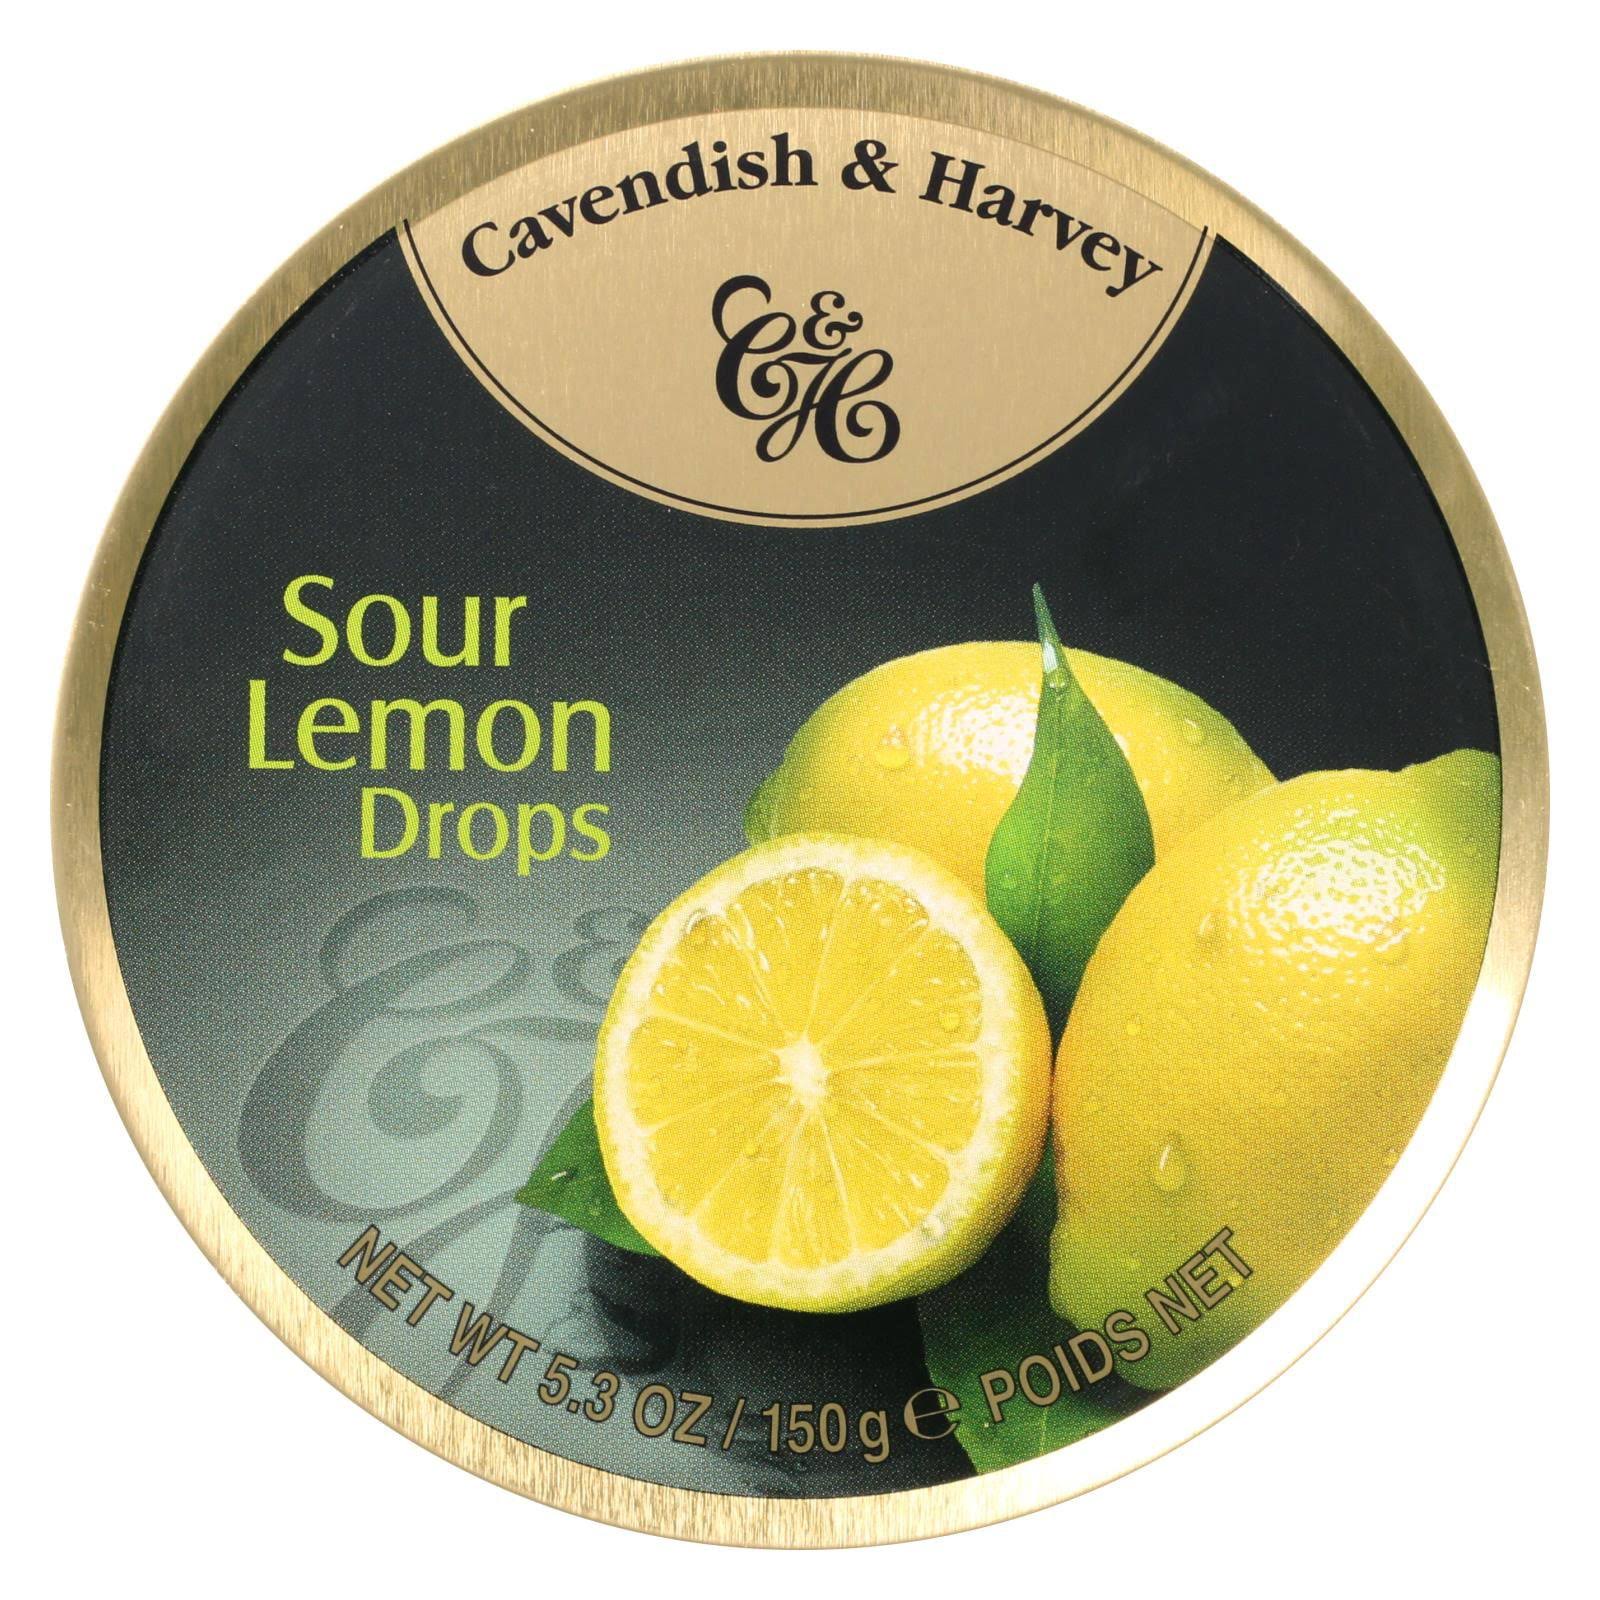 Cavendish & Harvey Sour Lemon Drops - 5.3oz